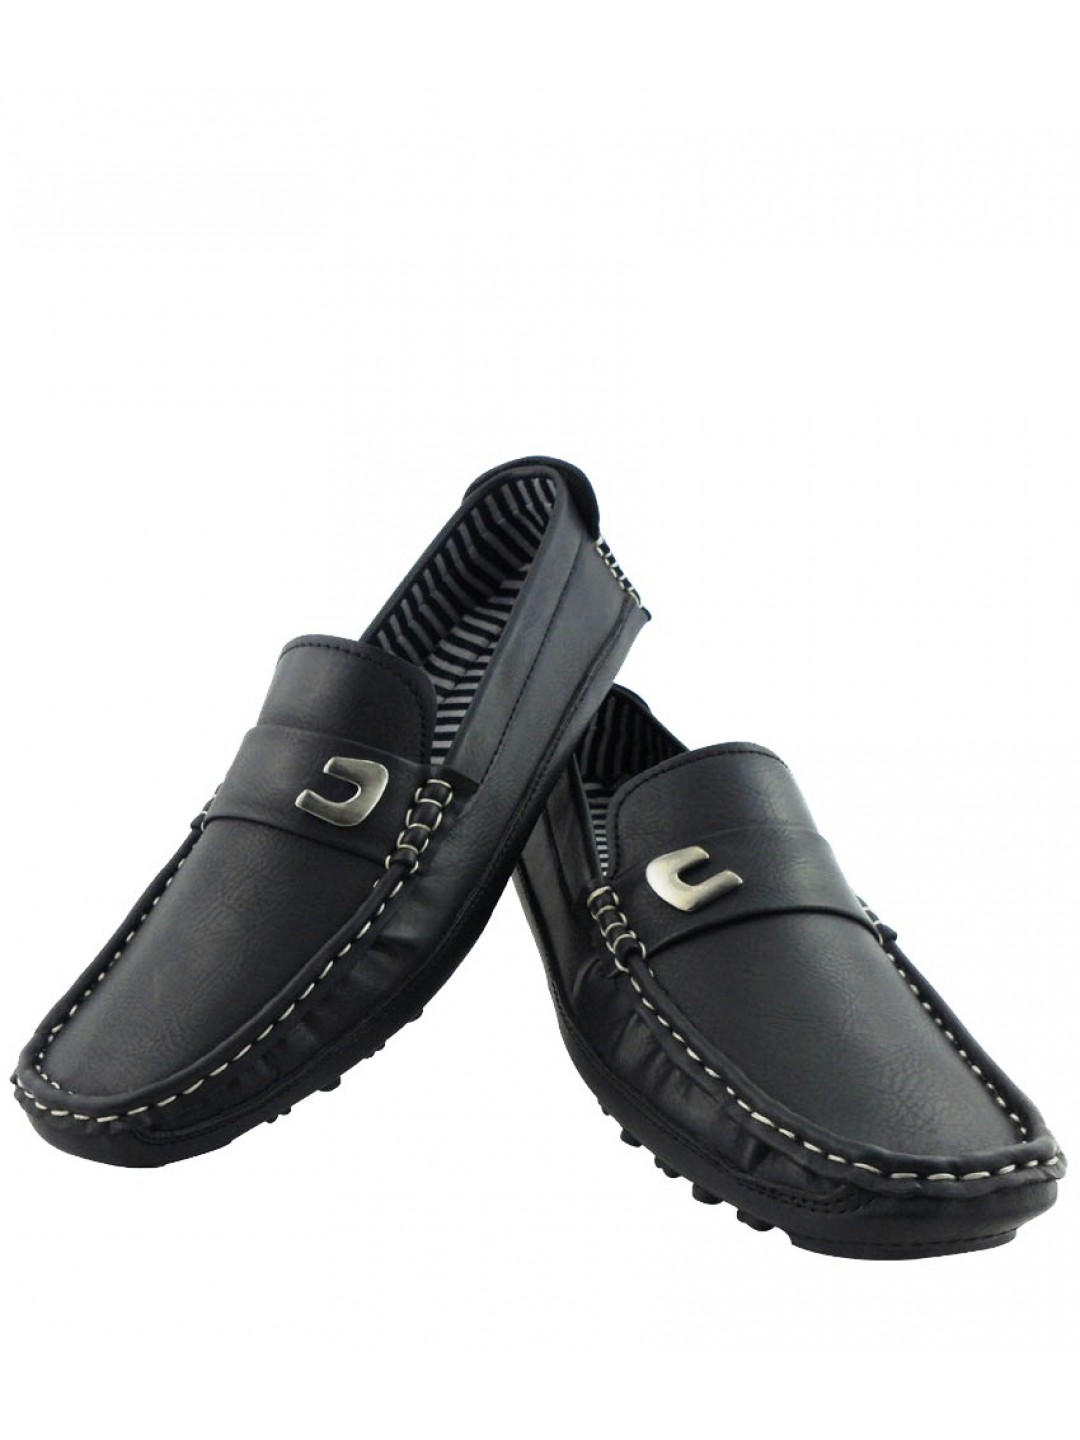 Elvace Stylish Comfy Black Loafer Men Shoes 6007